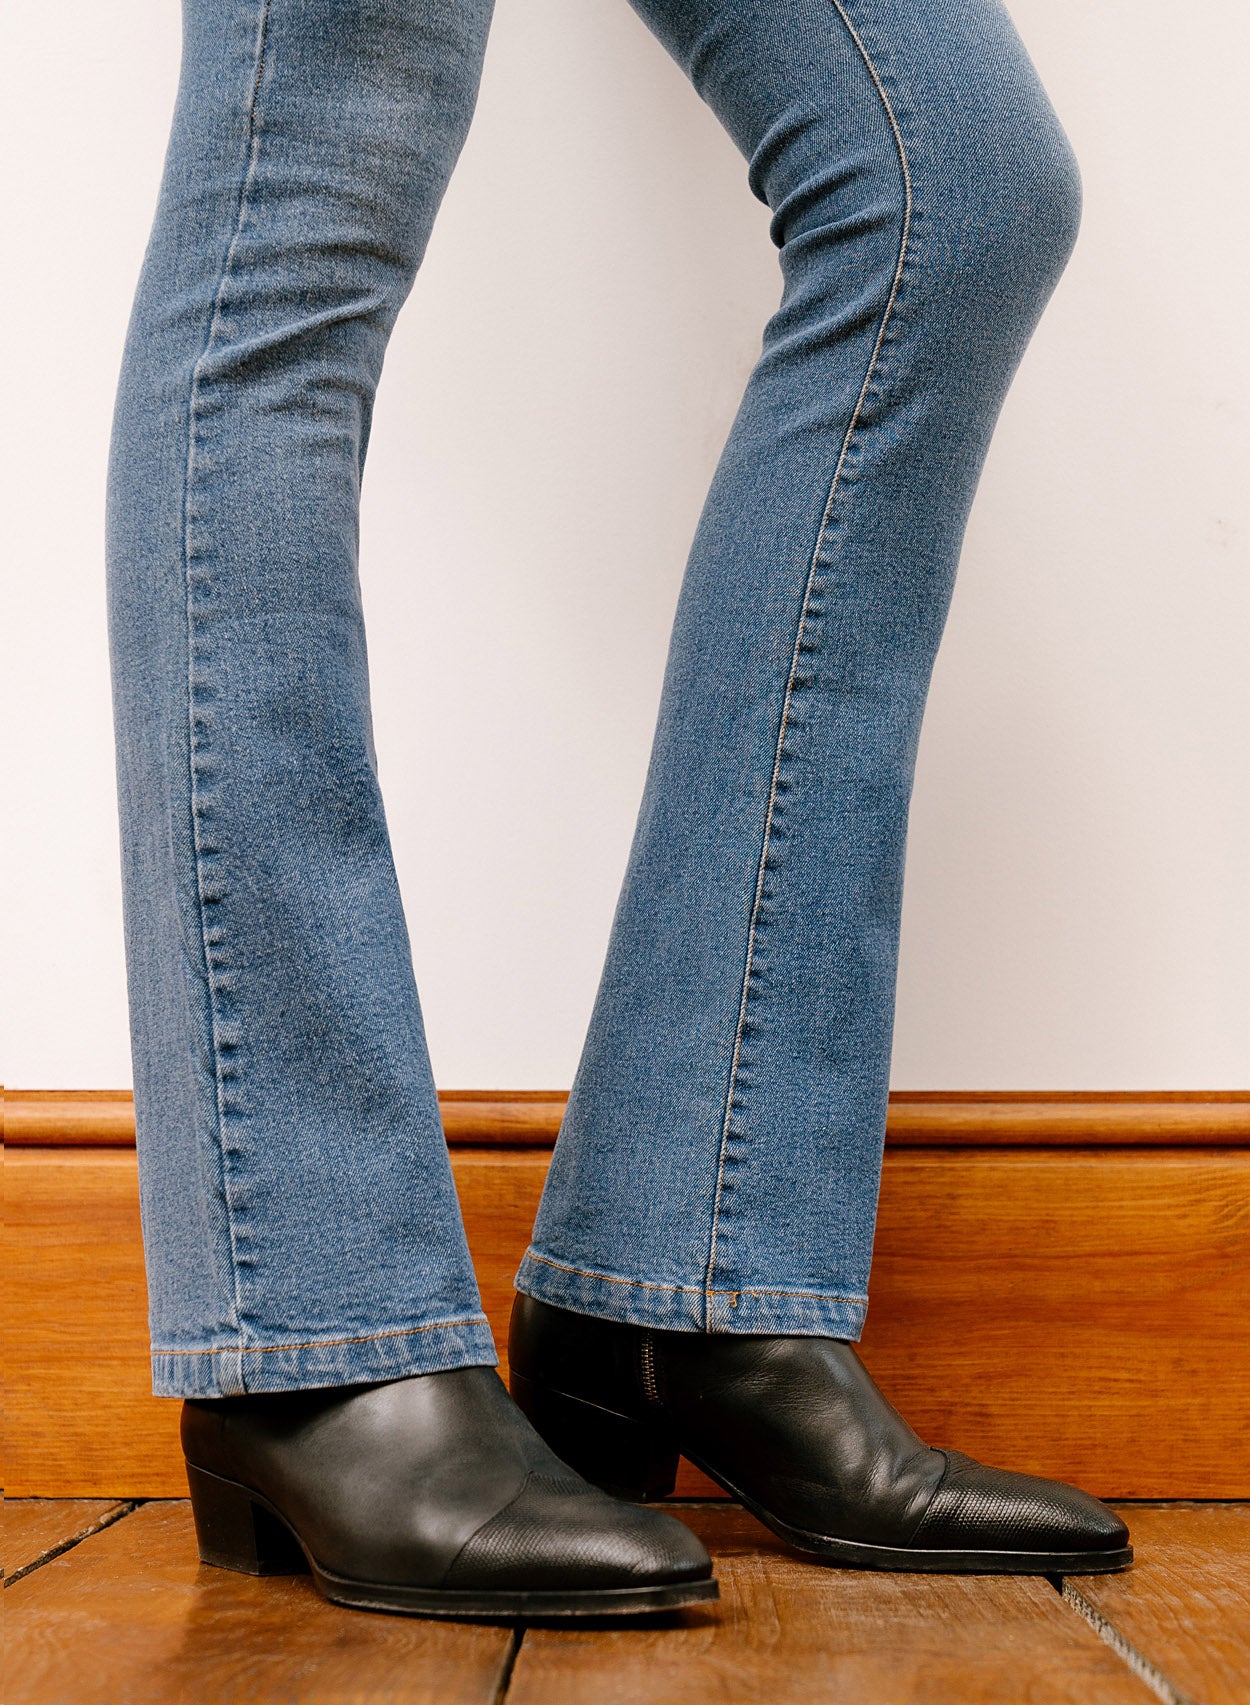 Vintage Fade Denim Flare Front Pocket Jeans ‐ Phix